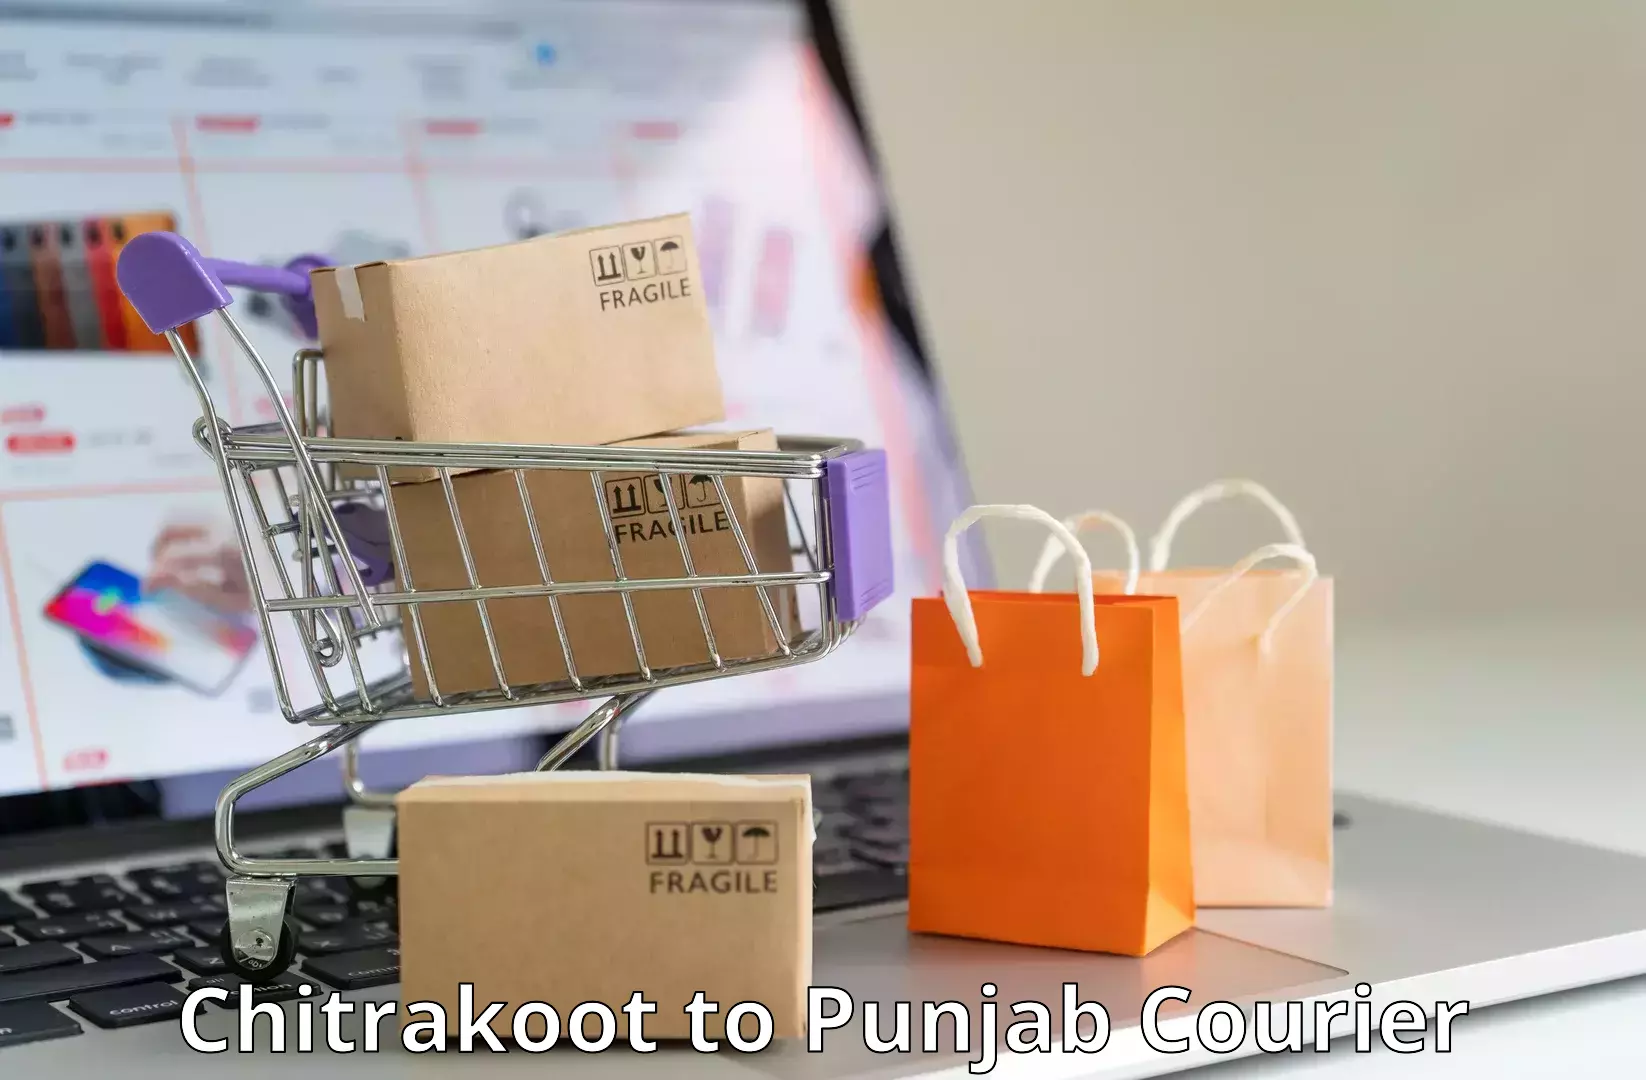 Courier service innovation Chitrakoot to Nawanshahr